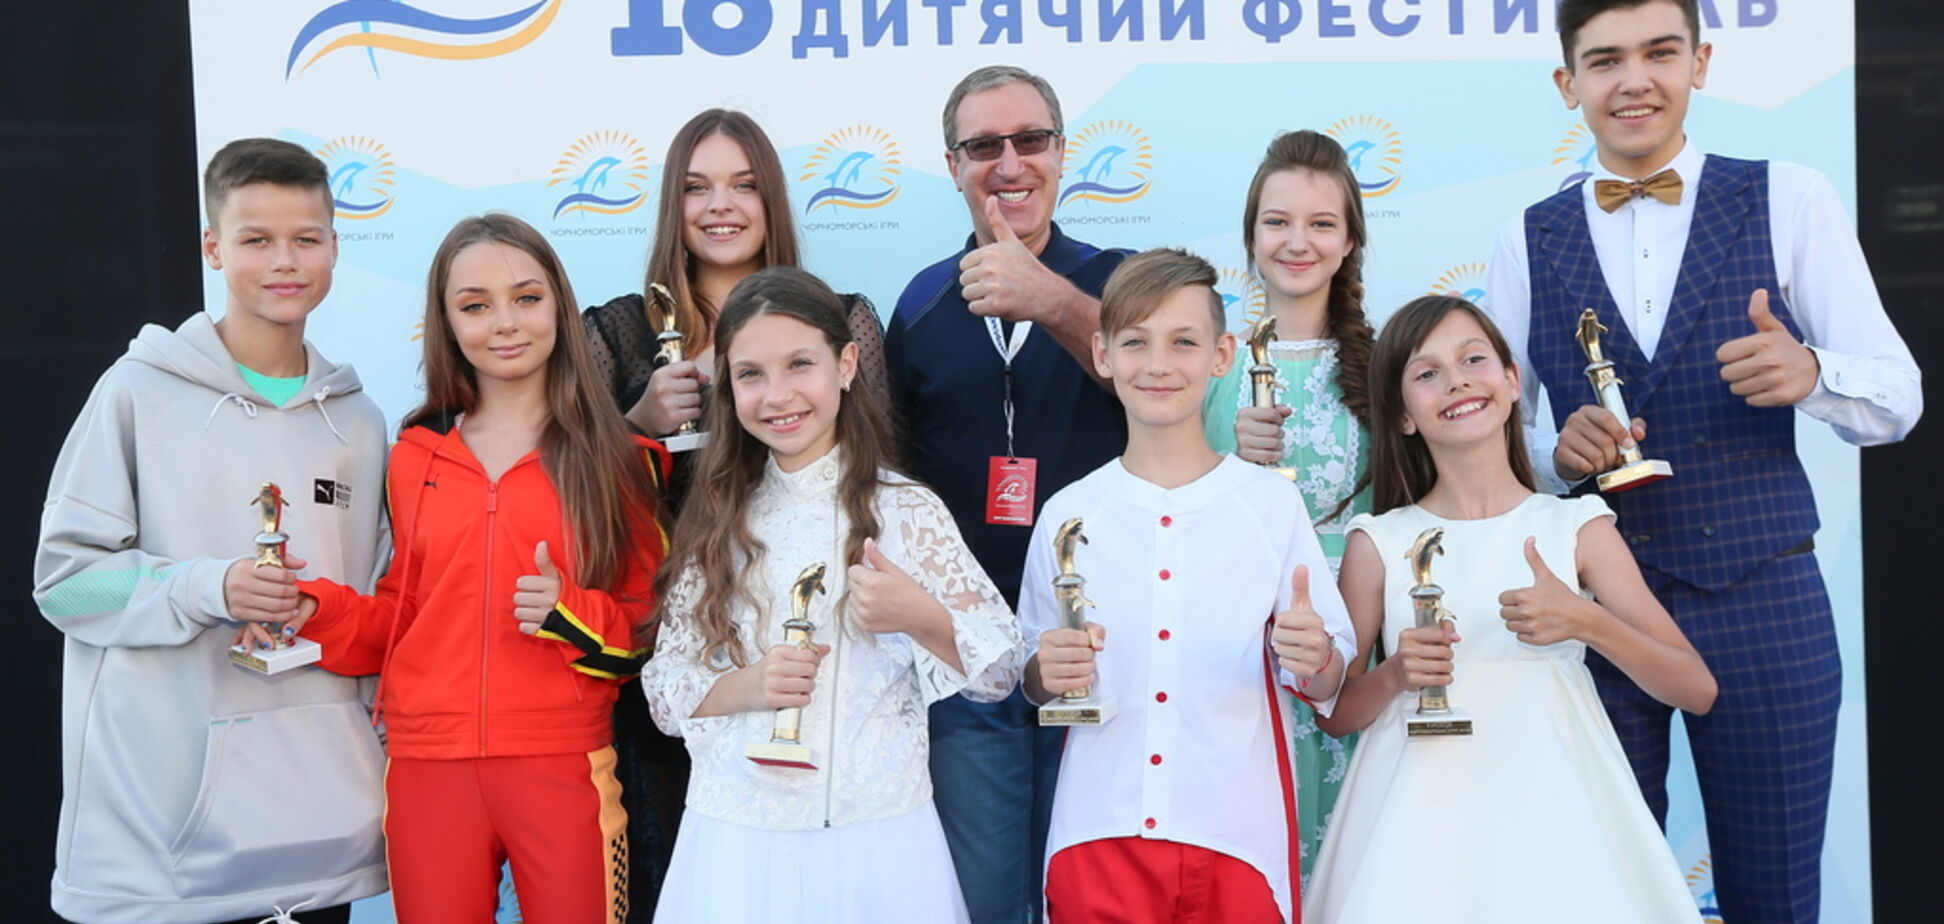 'Черноморские игры-2019': что известно о фестивале